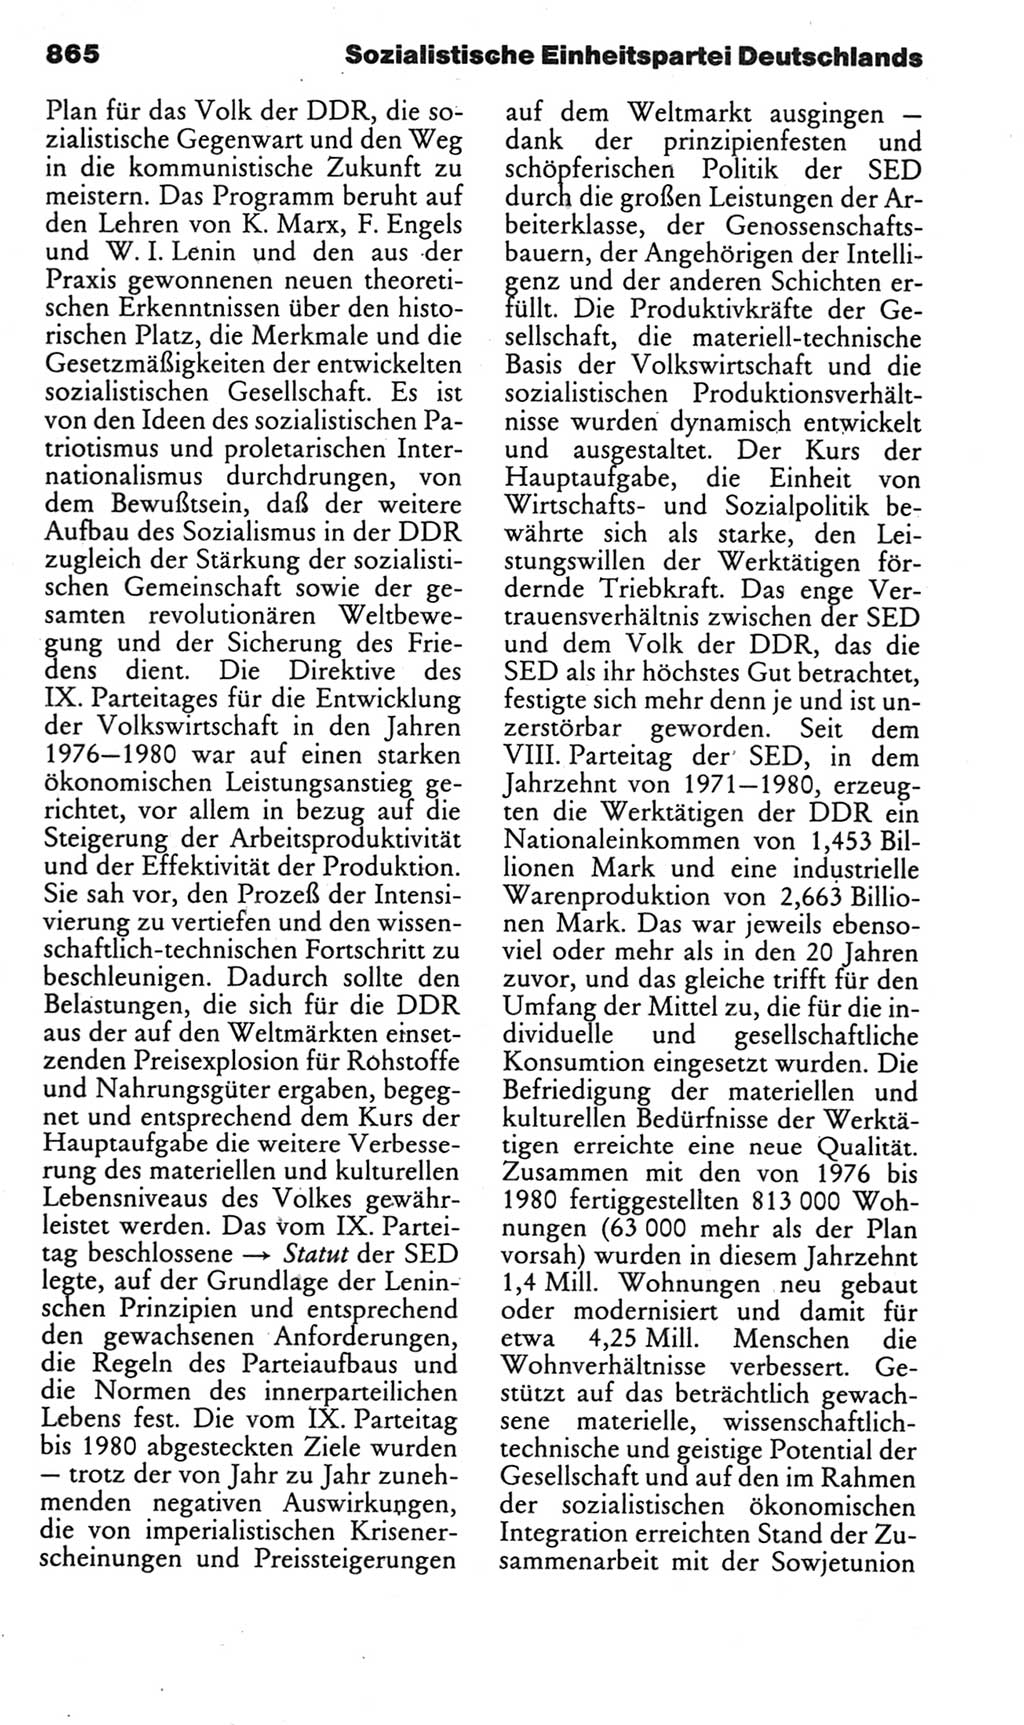 Kleines politisches Wörterbuch [Deutsche Demokratische Republik (DDR)] 1985, Seite 865 (Kl. pol. Wb. DDR 1985, S. 865)